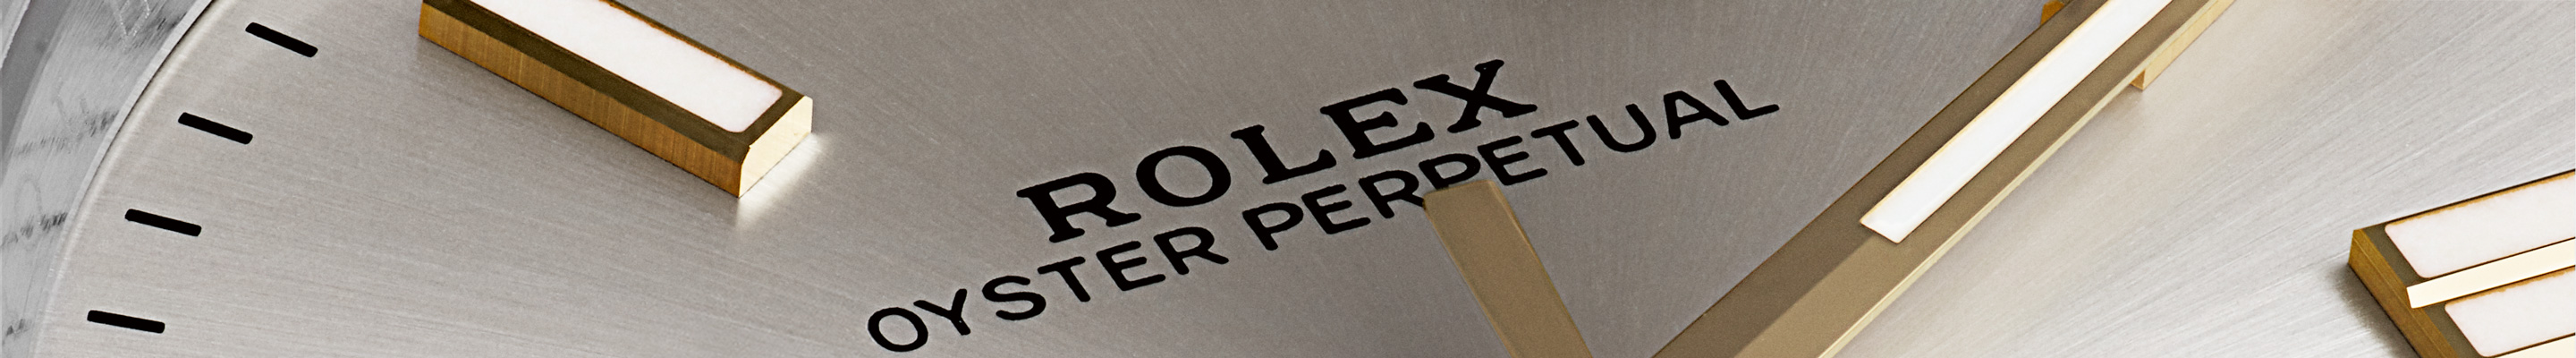 Rolex Oyster Perpetual, die Quintessenz der Oyster